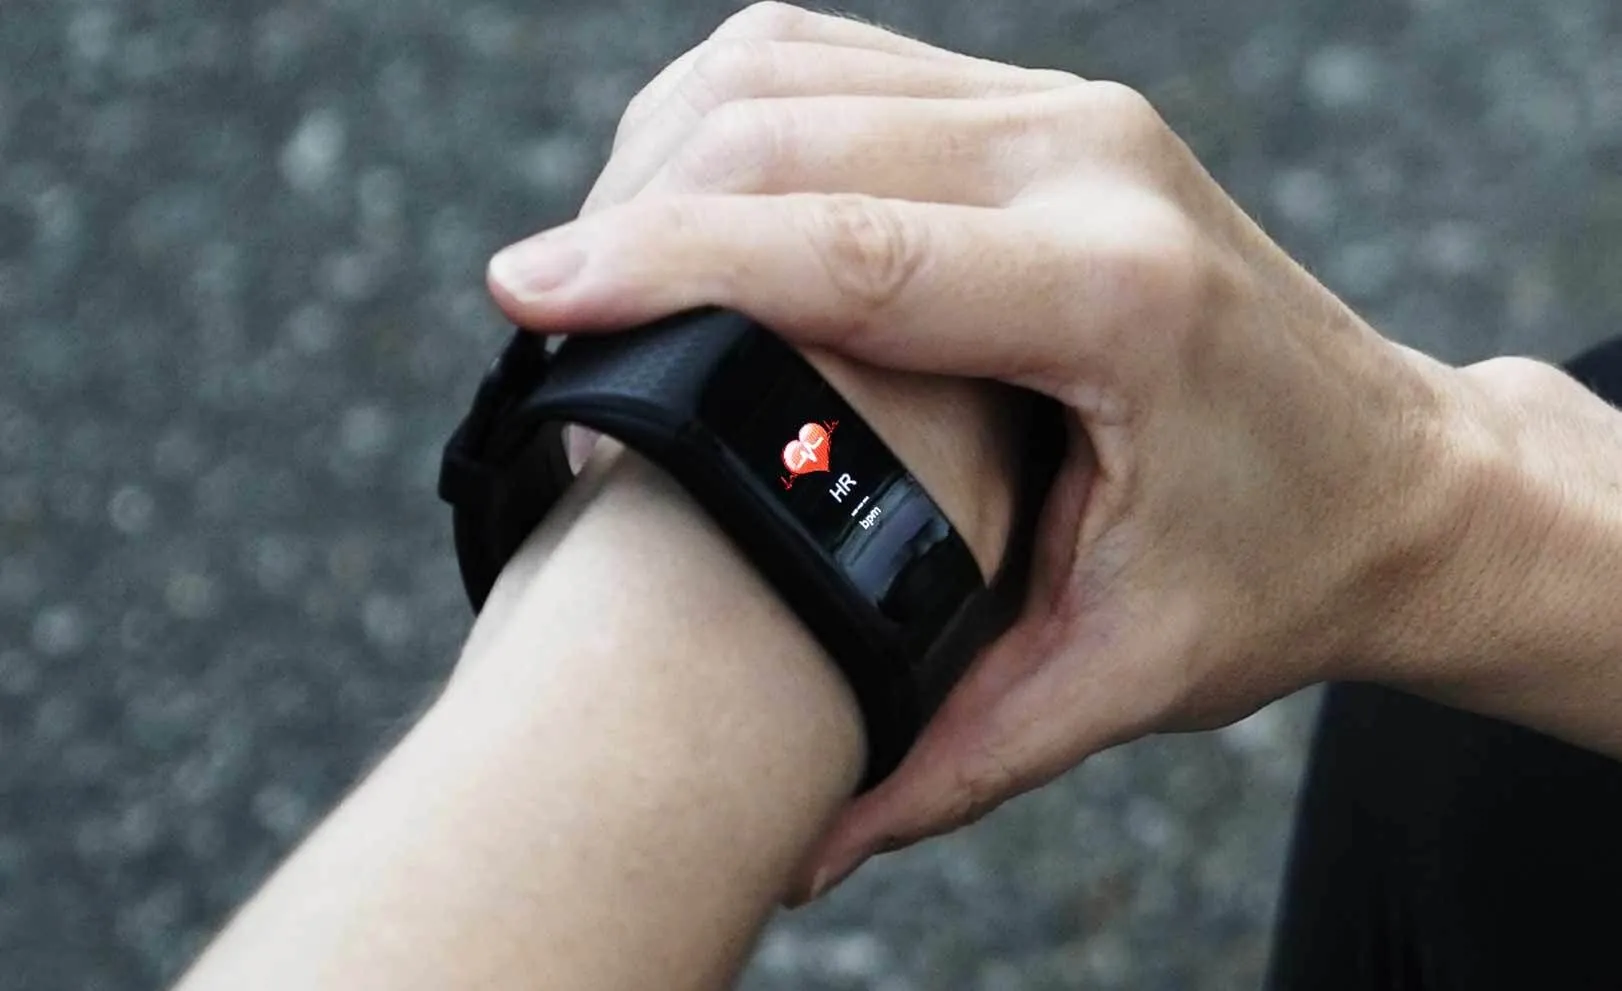 Le bras d'une personne portant une montre SmartTrack au poignet, avec un écran affichant un cœur rouge.